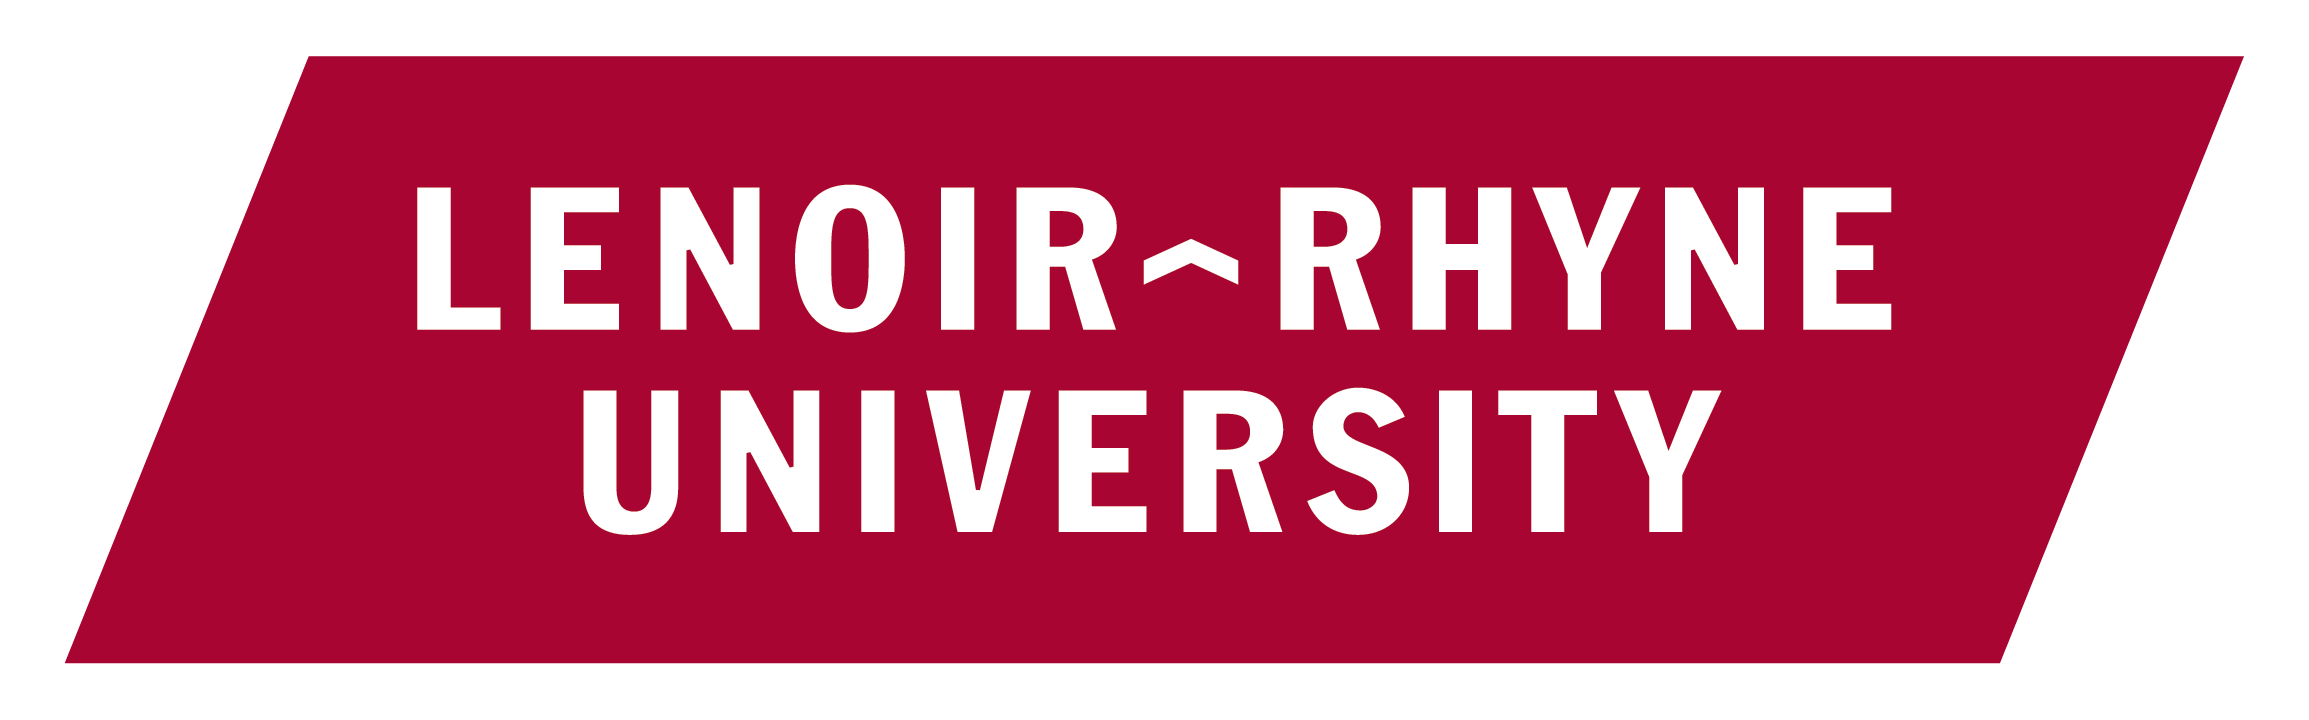 Lenoir-Rhyne University logo - white lettering over red slanted rectangle